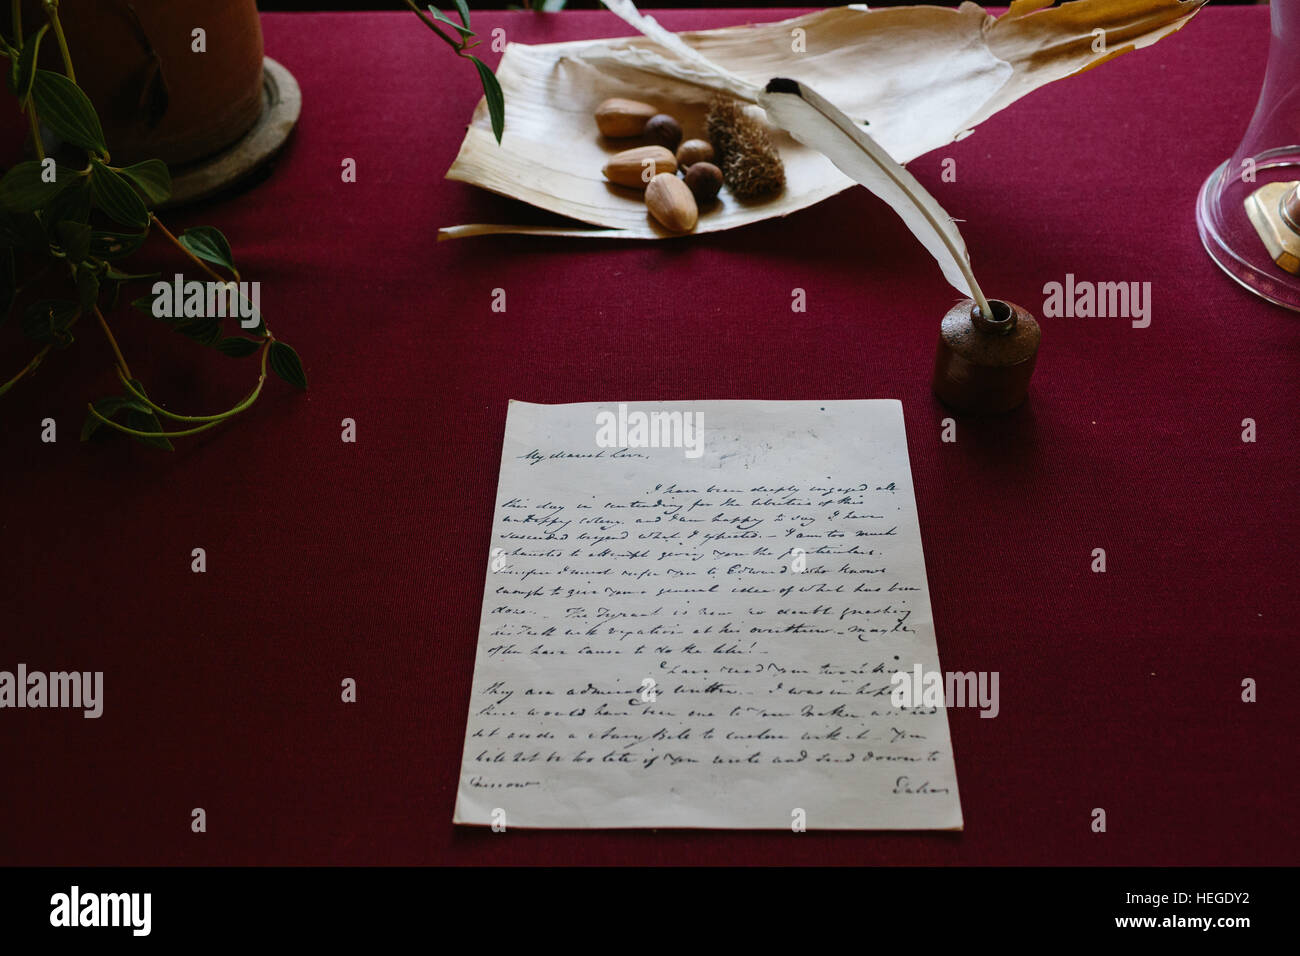 Une lettre écrite sur un bureau rouge à Elizabeth Farm, une ferme historique et Museum de Sydney Australie Banque D'Images